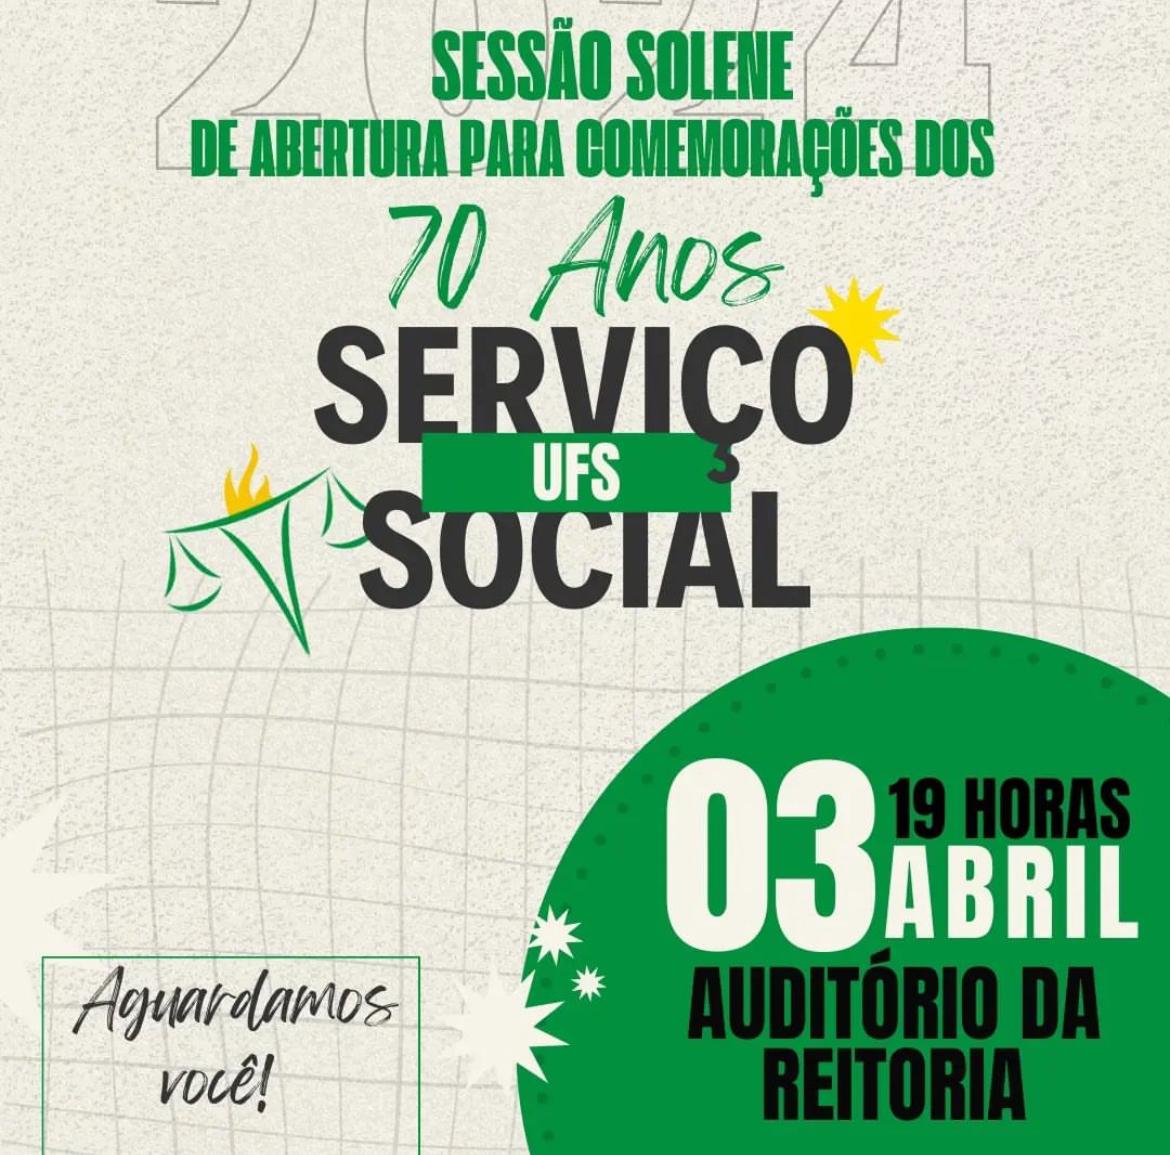 Curso de Serviço Social da UFS completa 70 anos